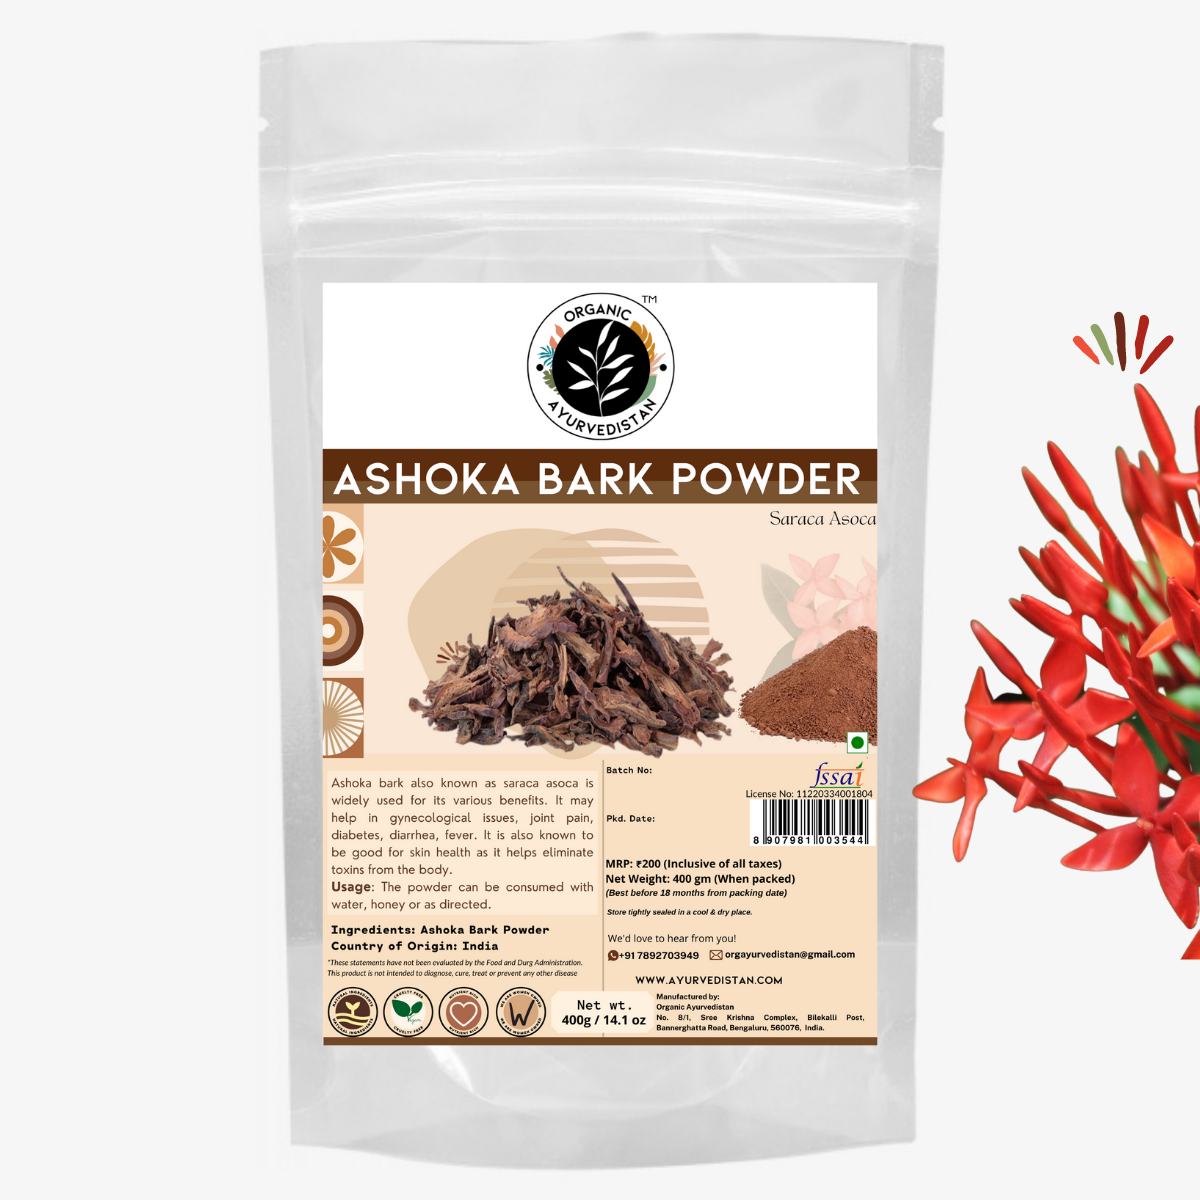 Ashoka bark powder